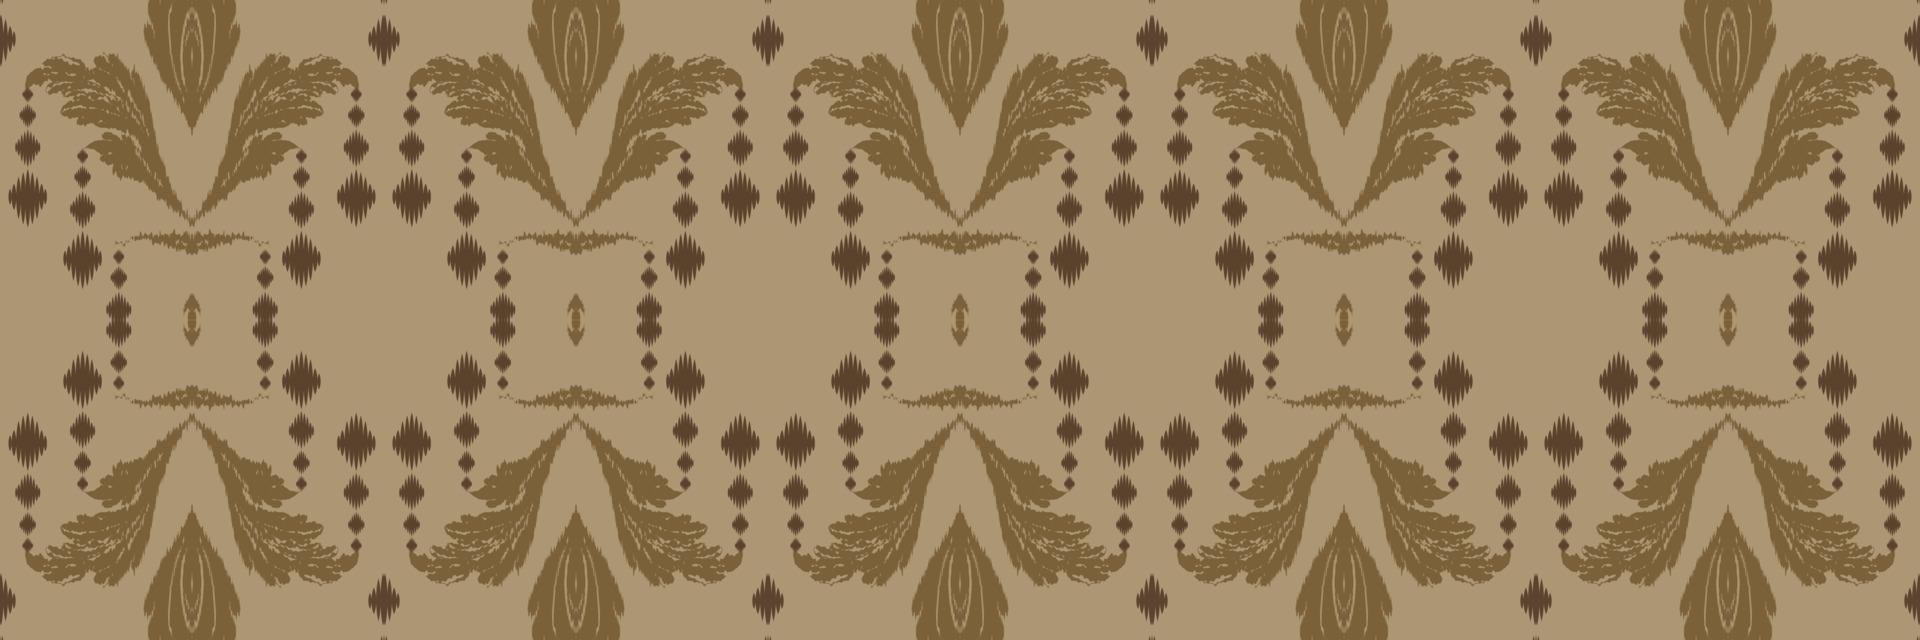 motivo textil batik ikat patrón sin costuras diseño de vector digital para imprimir saree kurti borde de tela símbolos de pincel de borde diseñador de muestras